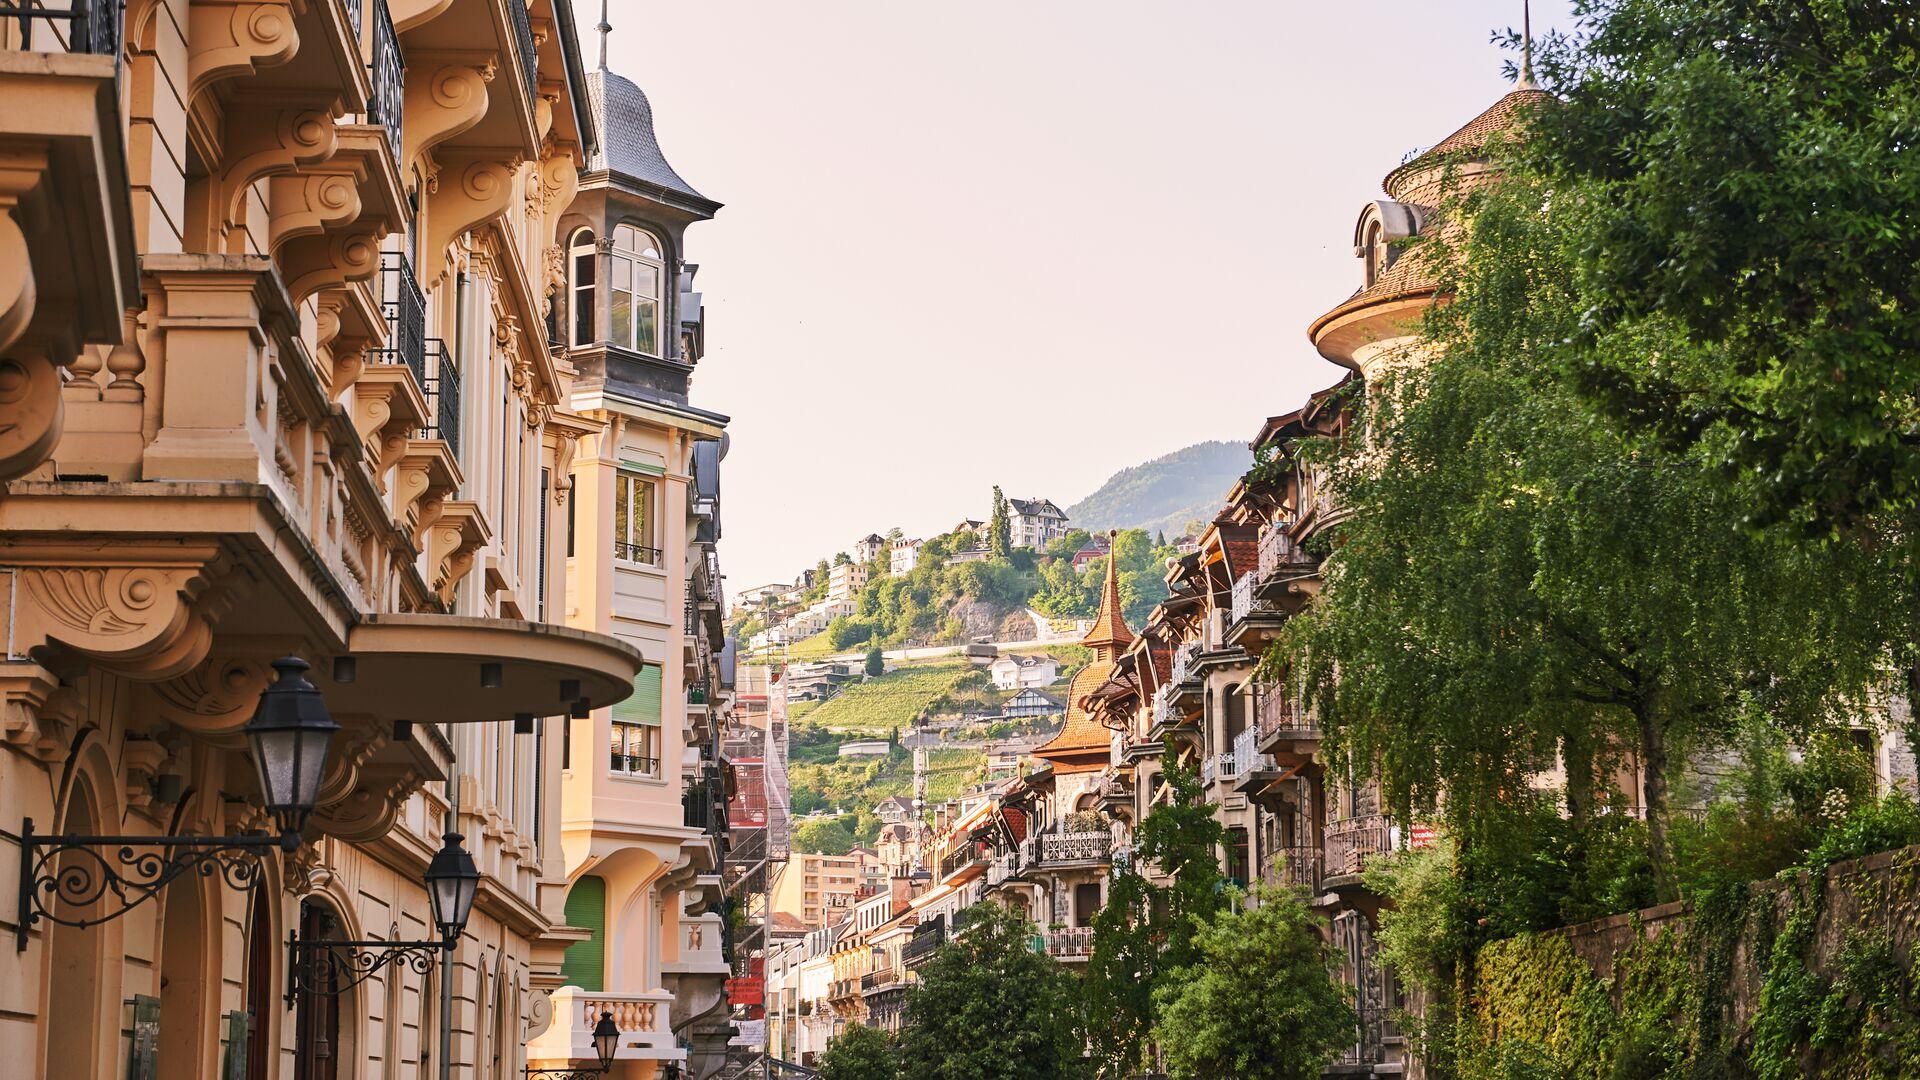 Séjour linguistique Suisse, Montreux, Ville